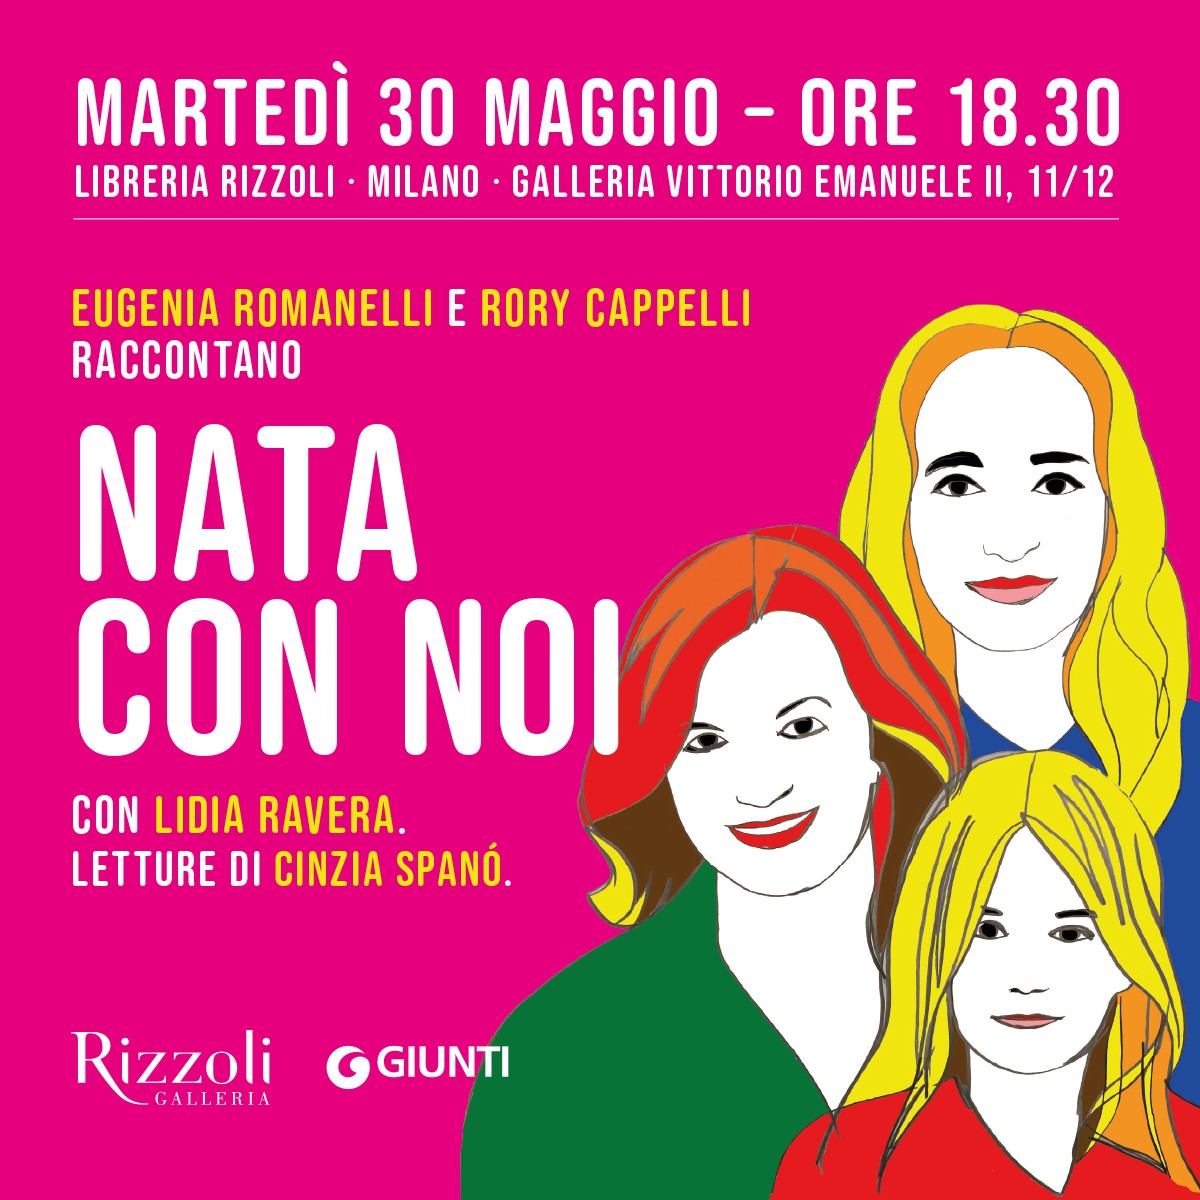 Eugenia Romanelli e Rory Cappelli presentano "Nata con noi". Appuntamento a Milano